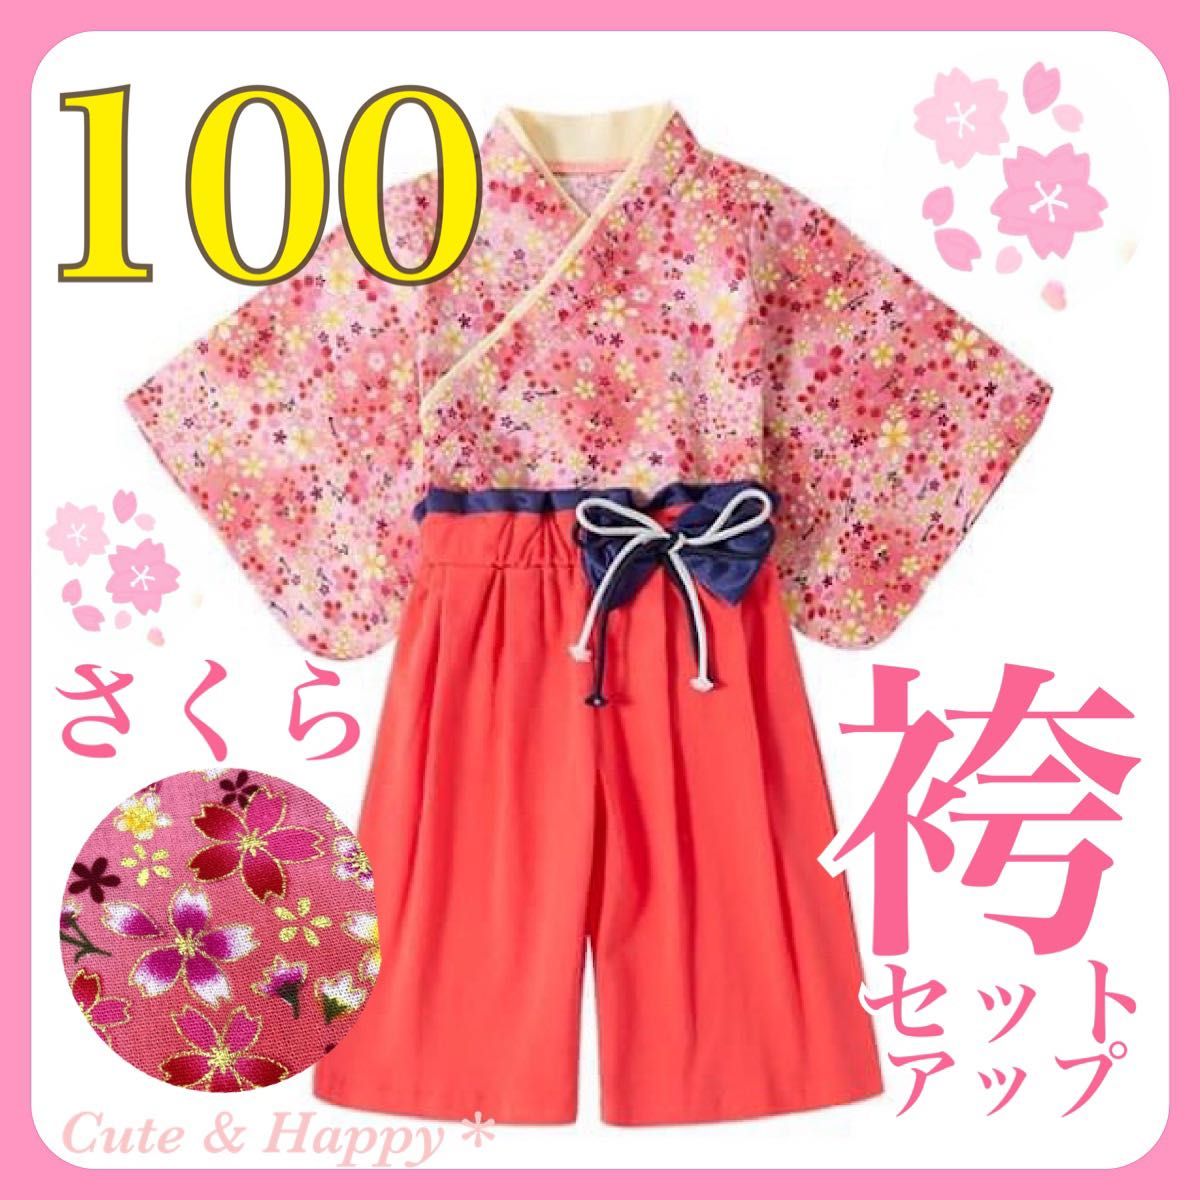 100 さくら ピンク 袴 セットアップ 女の子 ひな祭り 結婚式 キッズ袴